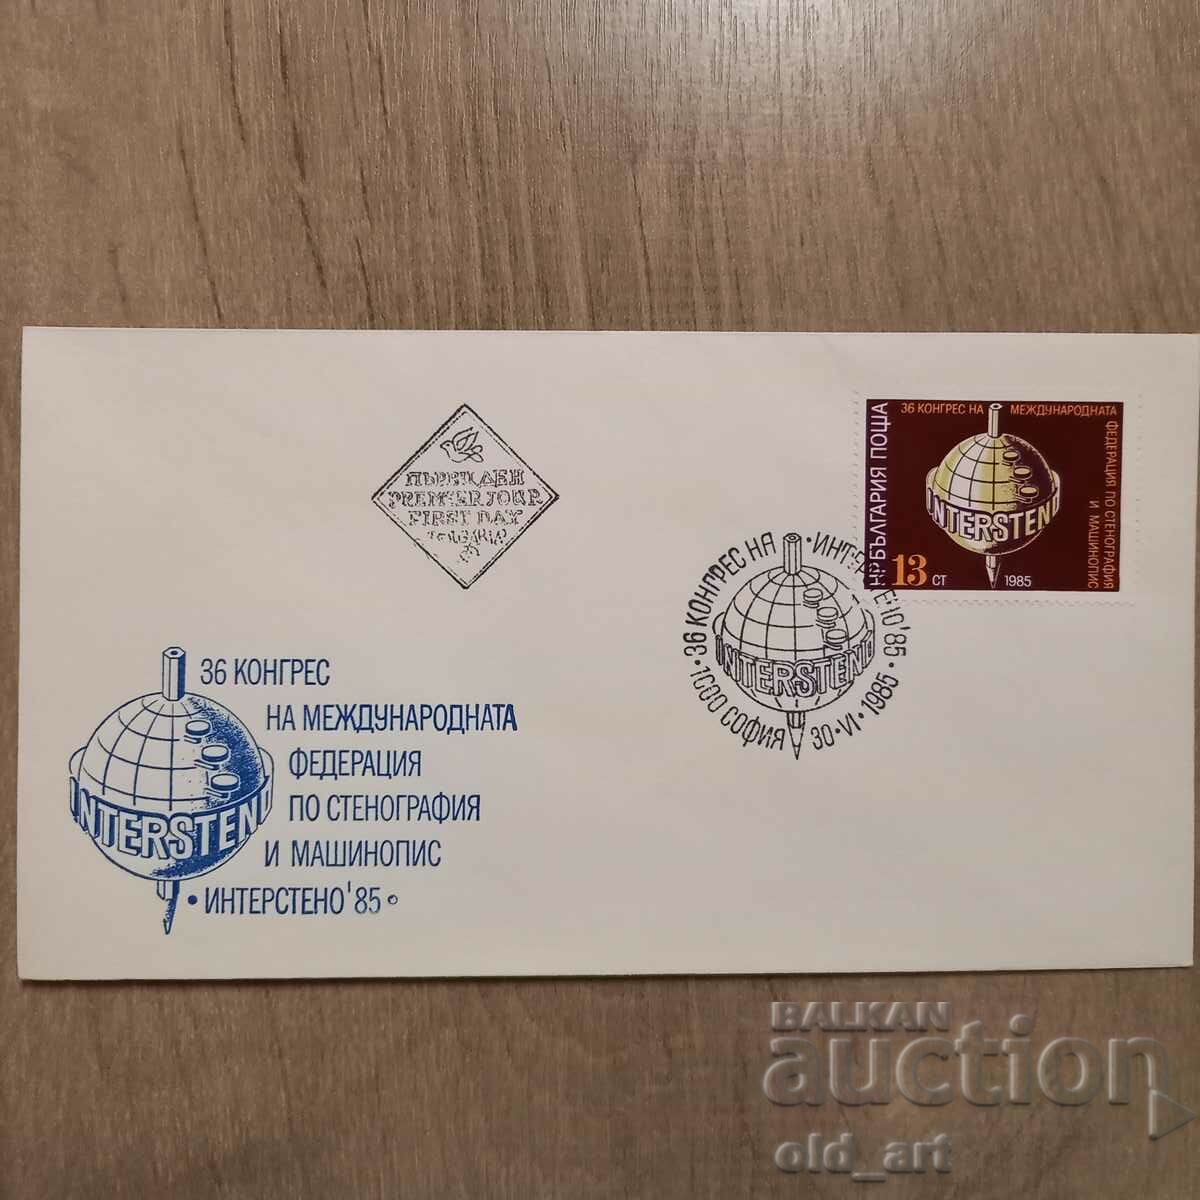 Ταχυδρομικός φάκελος - 36ο Συνέδριο της Διεθνούς Ομοσπονδίας Συντομογραφίας